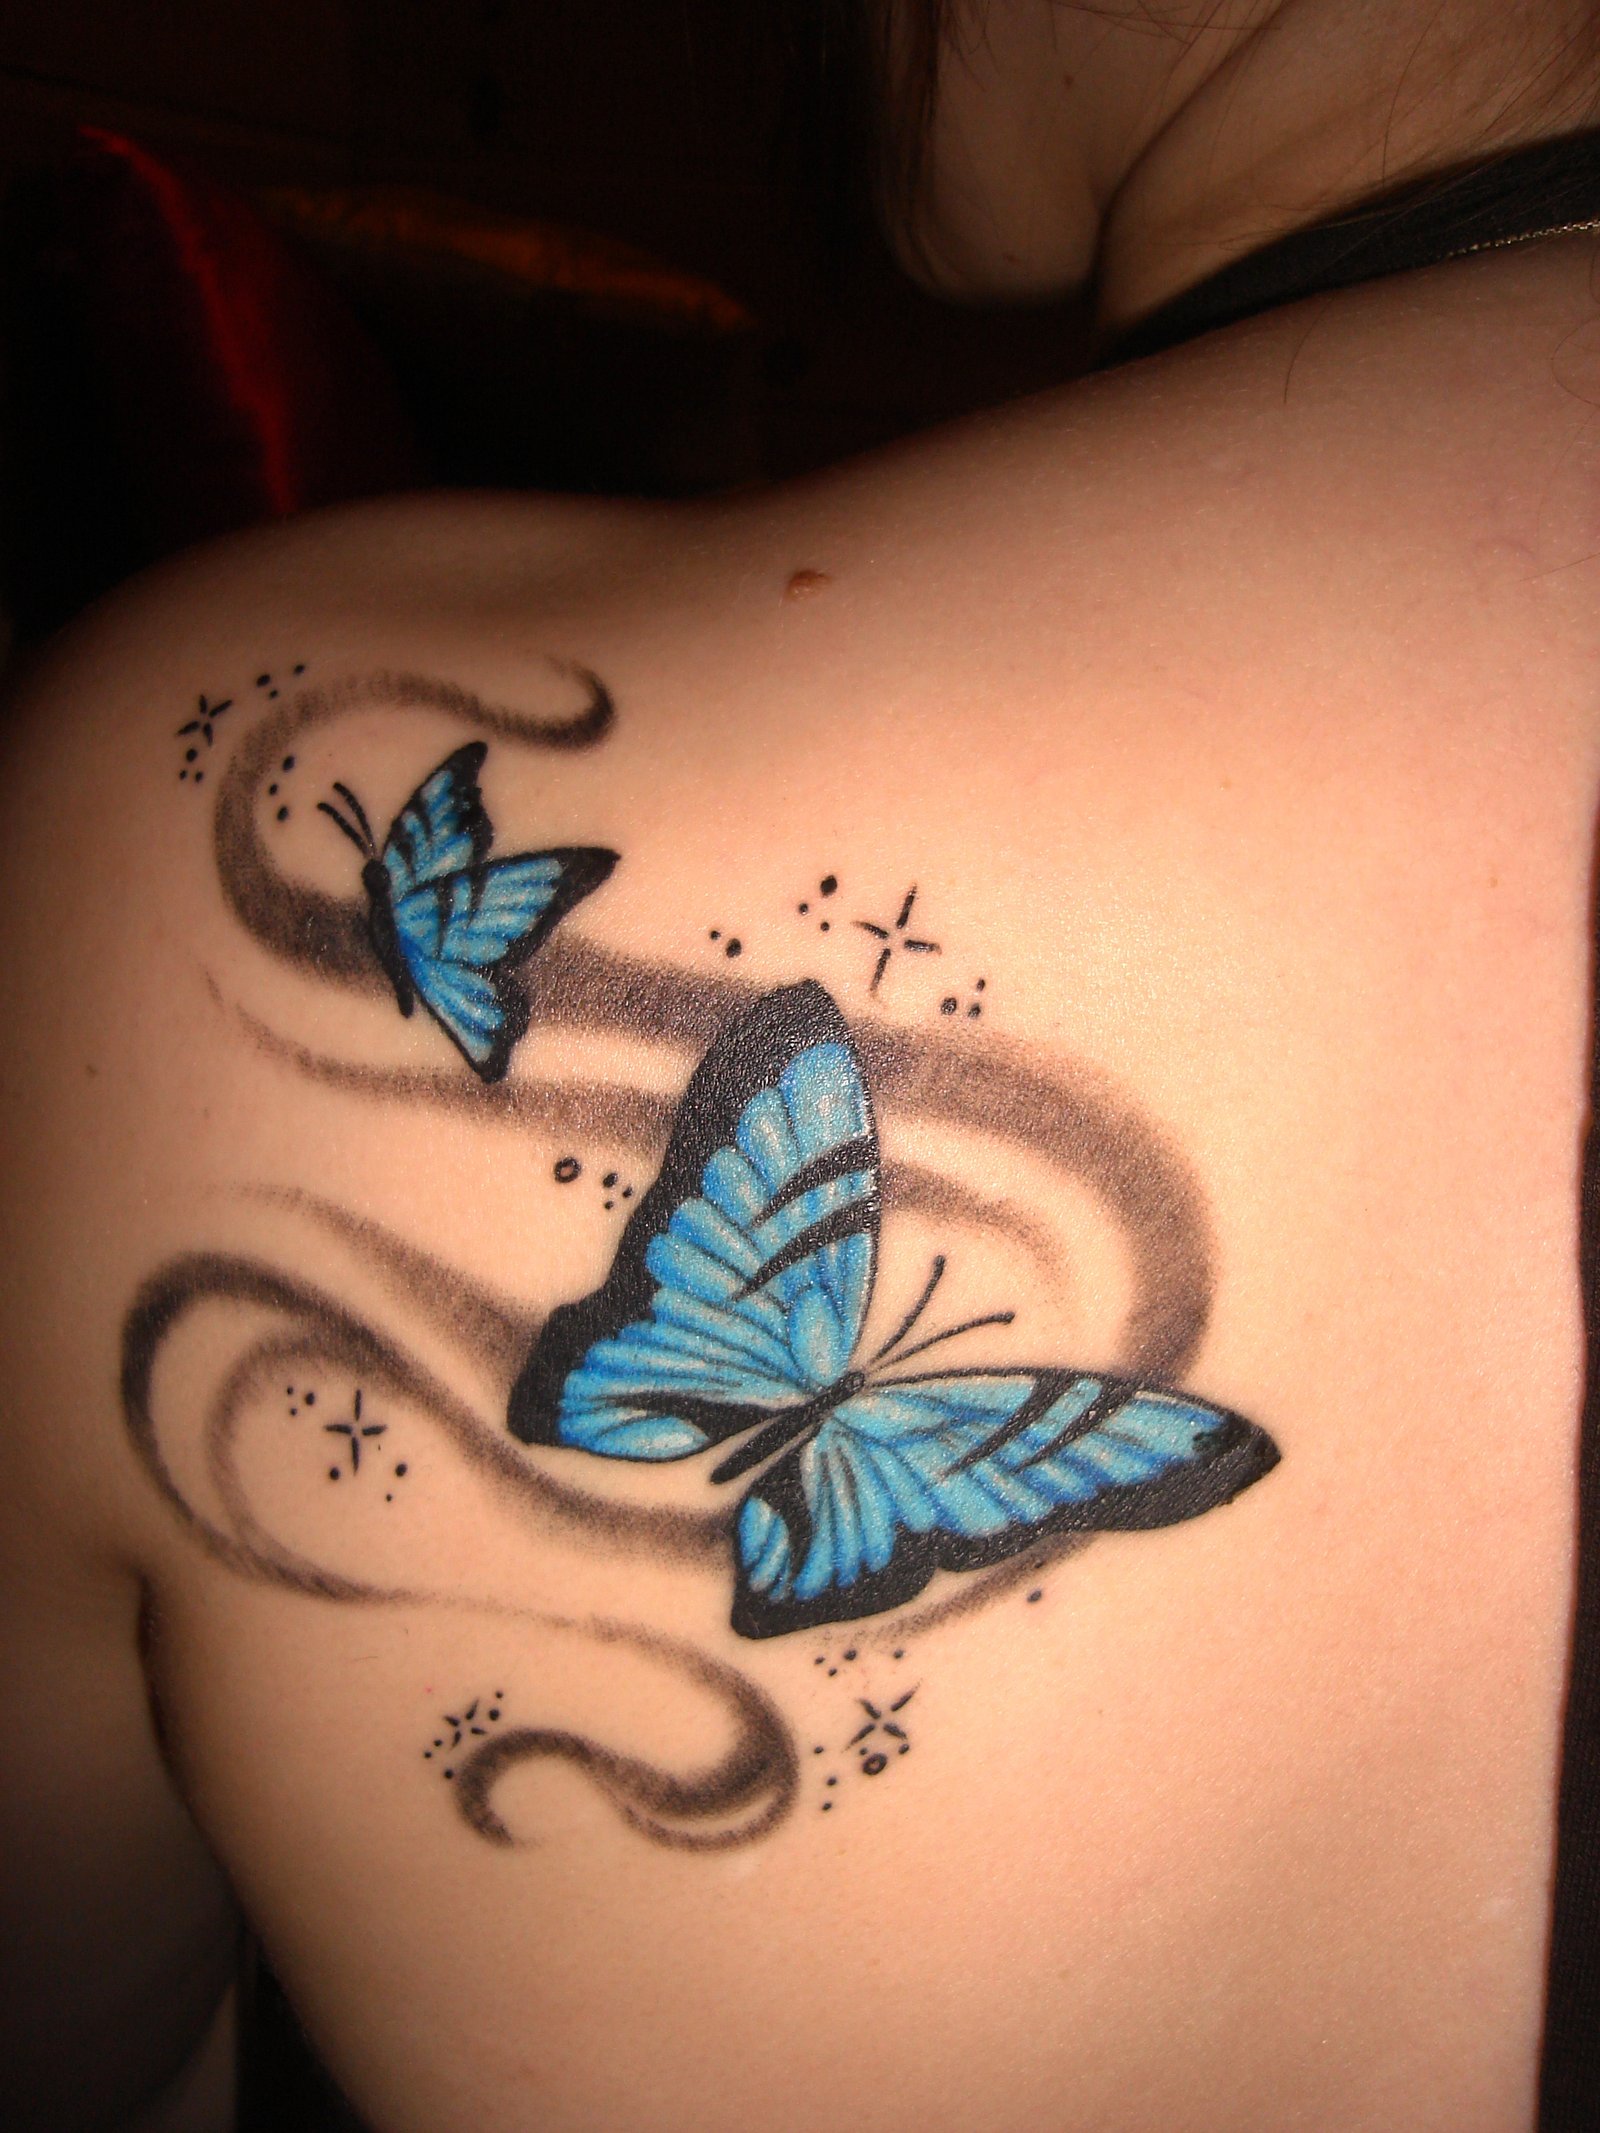 7-butterfly tattoo ideas